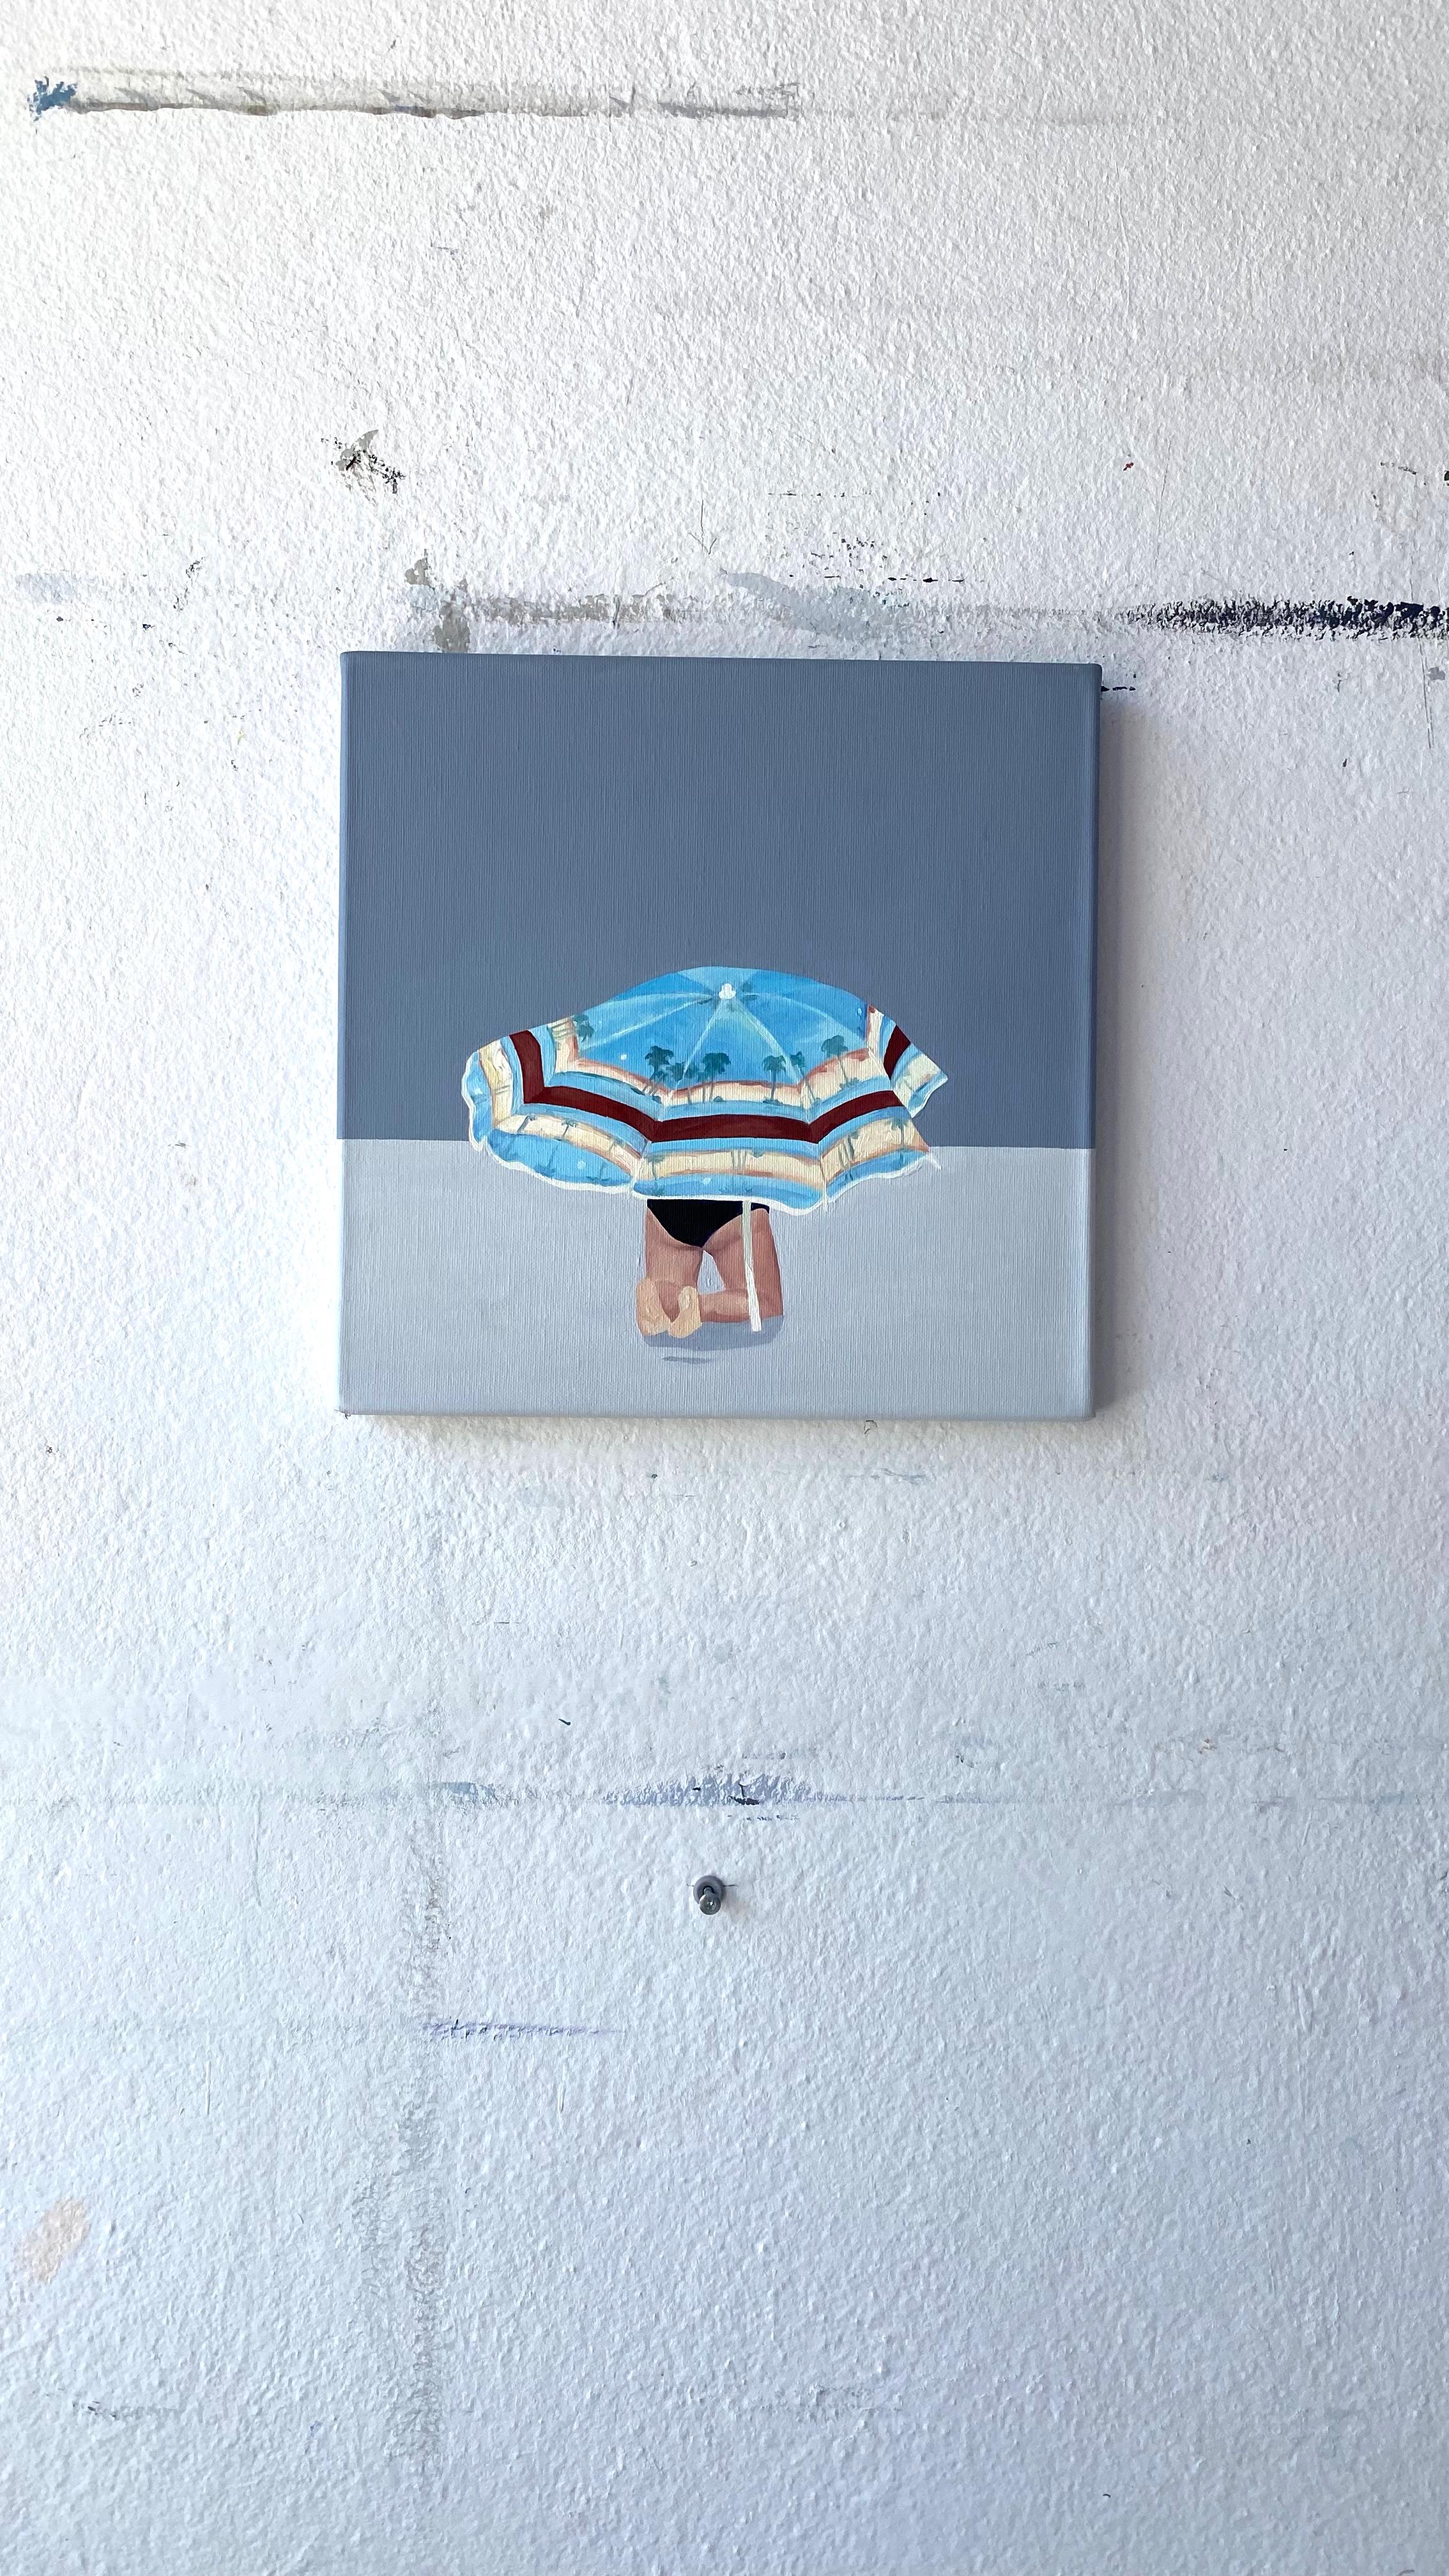 La prière - Peinture à l'huile figurative moderne, vue de plage, paysage, abat-jour - Contemporain Painting par Julita Malinowska